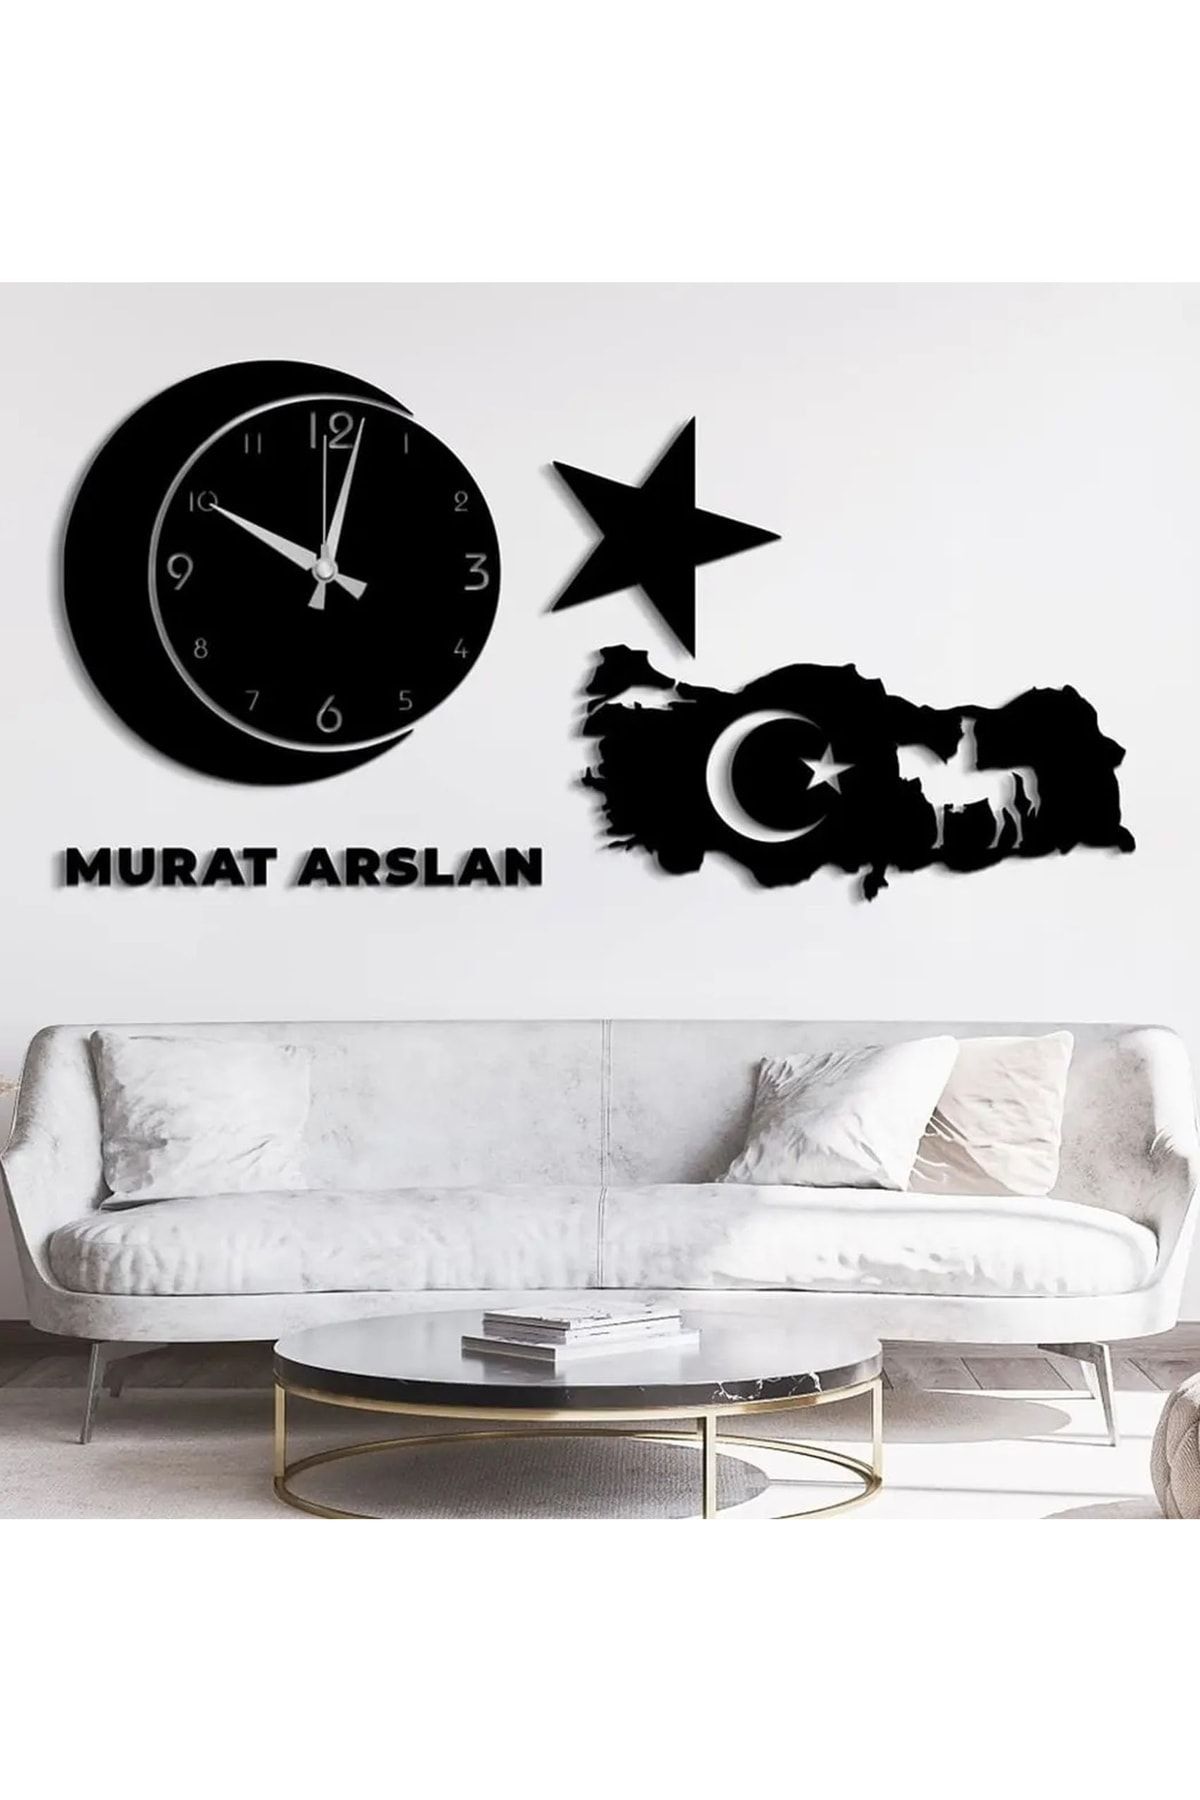 PLANET STORE Ahşap Ay Yıldız Türkiye Haritalı Motif ve Duvar Saati (isme Özel)